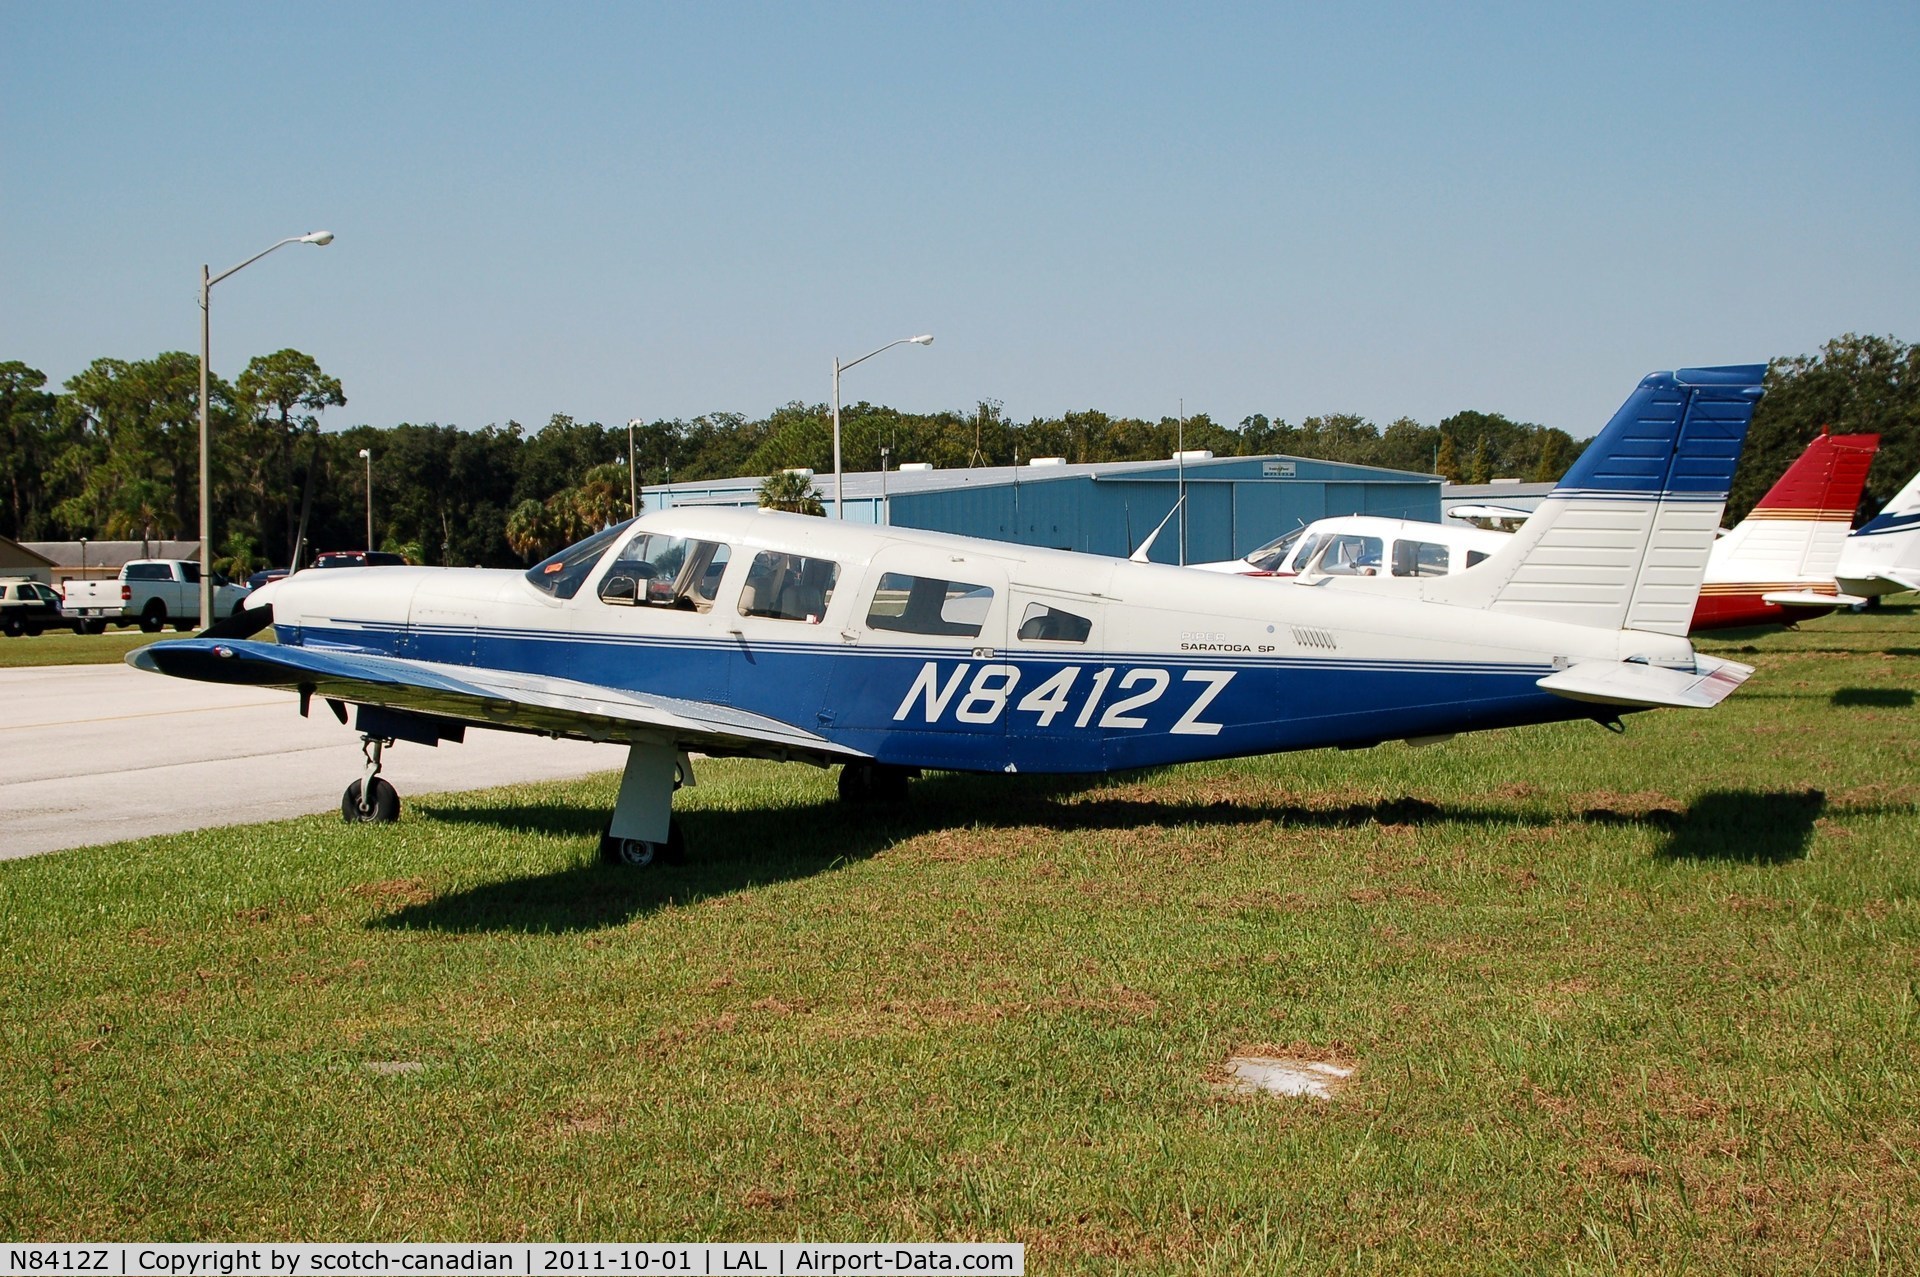 N8412Z, 1981 Piper PA-32R-301 Saratoga C/N 32R-8113086, 1981 Piper PA-32R-301 N8412Z at Lakeland Linder Regional Airport, Lakeland, FL